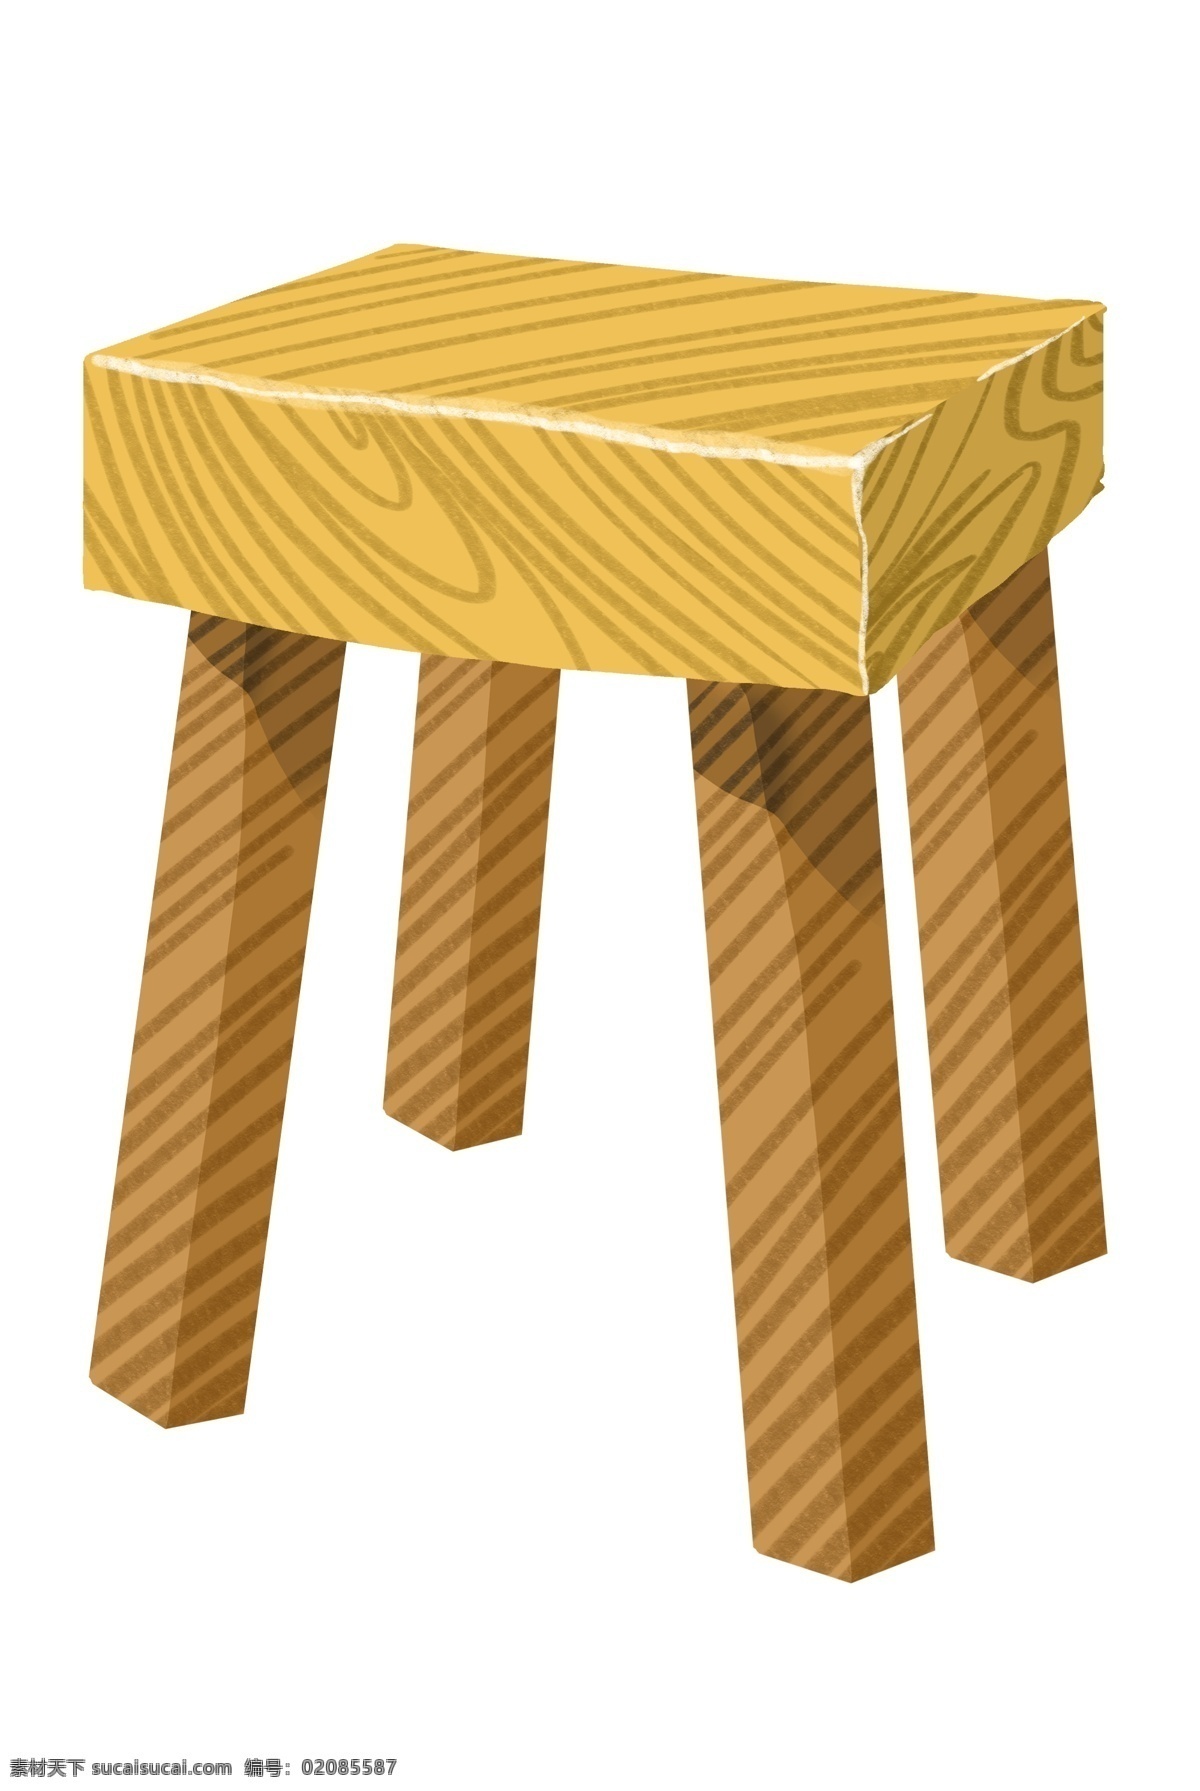 四 条 腿 矮 凳子 插画 木质马凳 小板 木质 花纹木头 四条腿凳子 矮凳子插画 实木板凳 中式家具